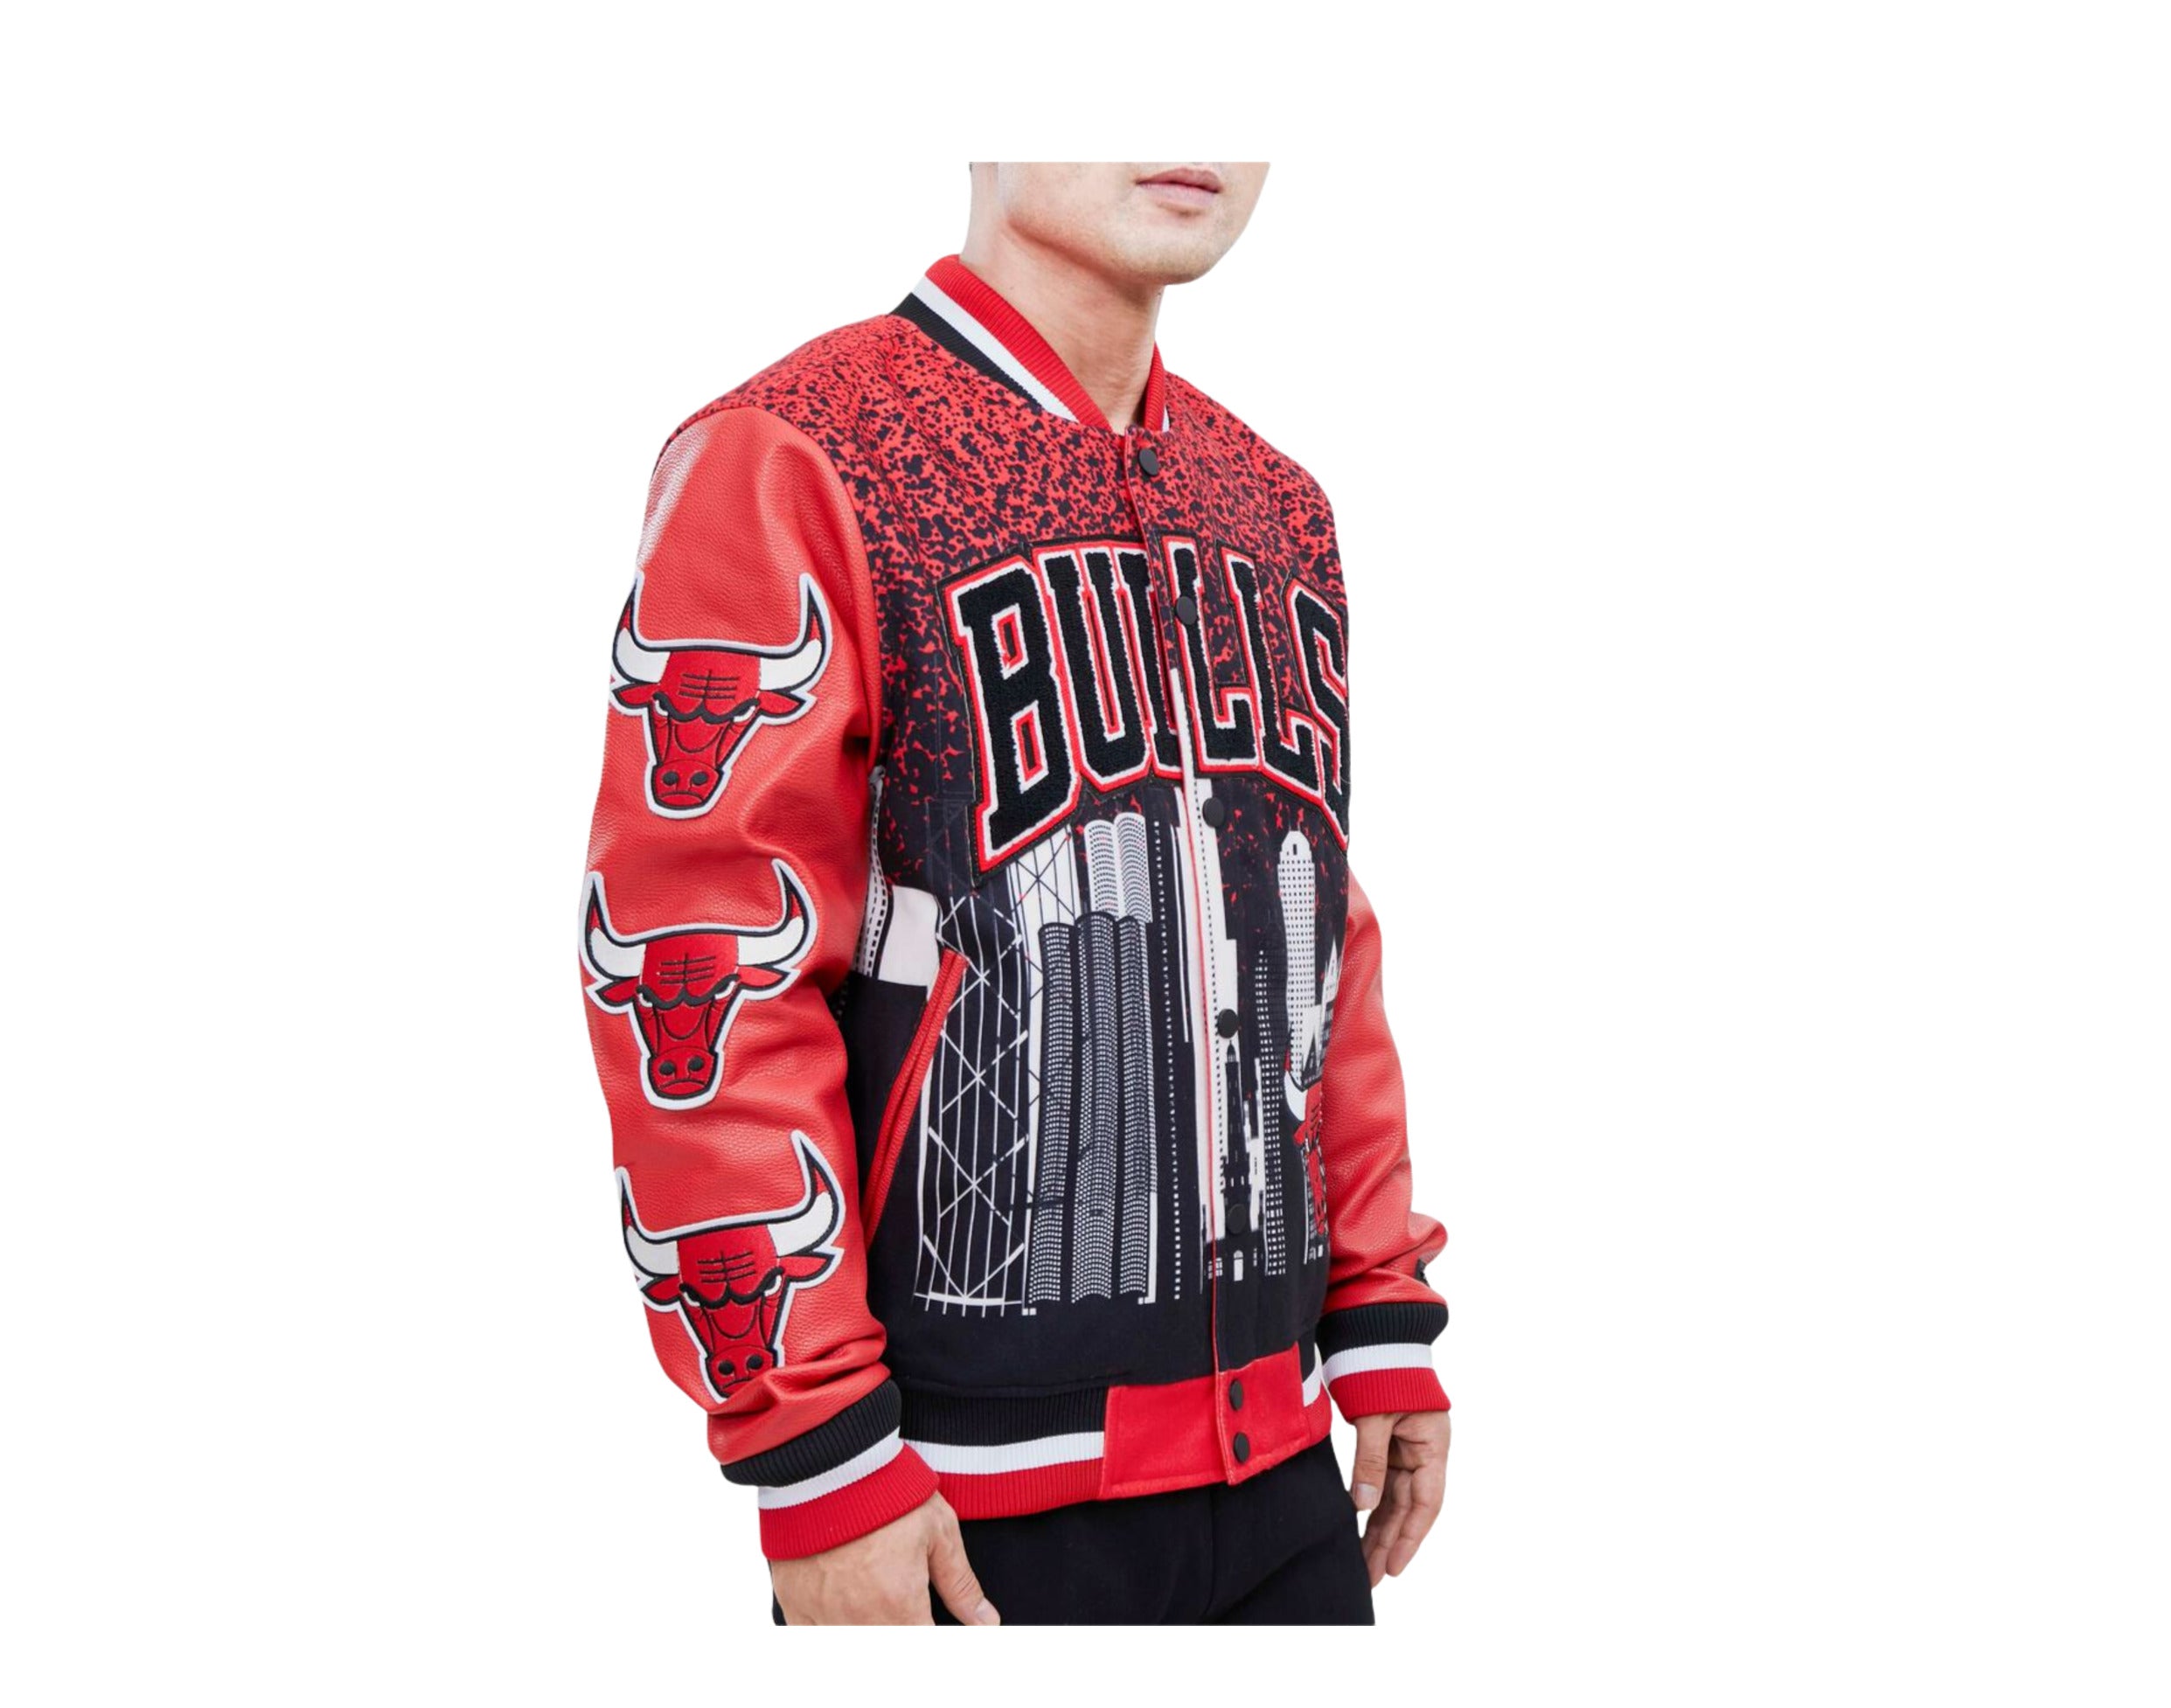 Mens Chicago Bulls Jacket, Bulls Pullover, Chicago Bulls Varsity